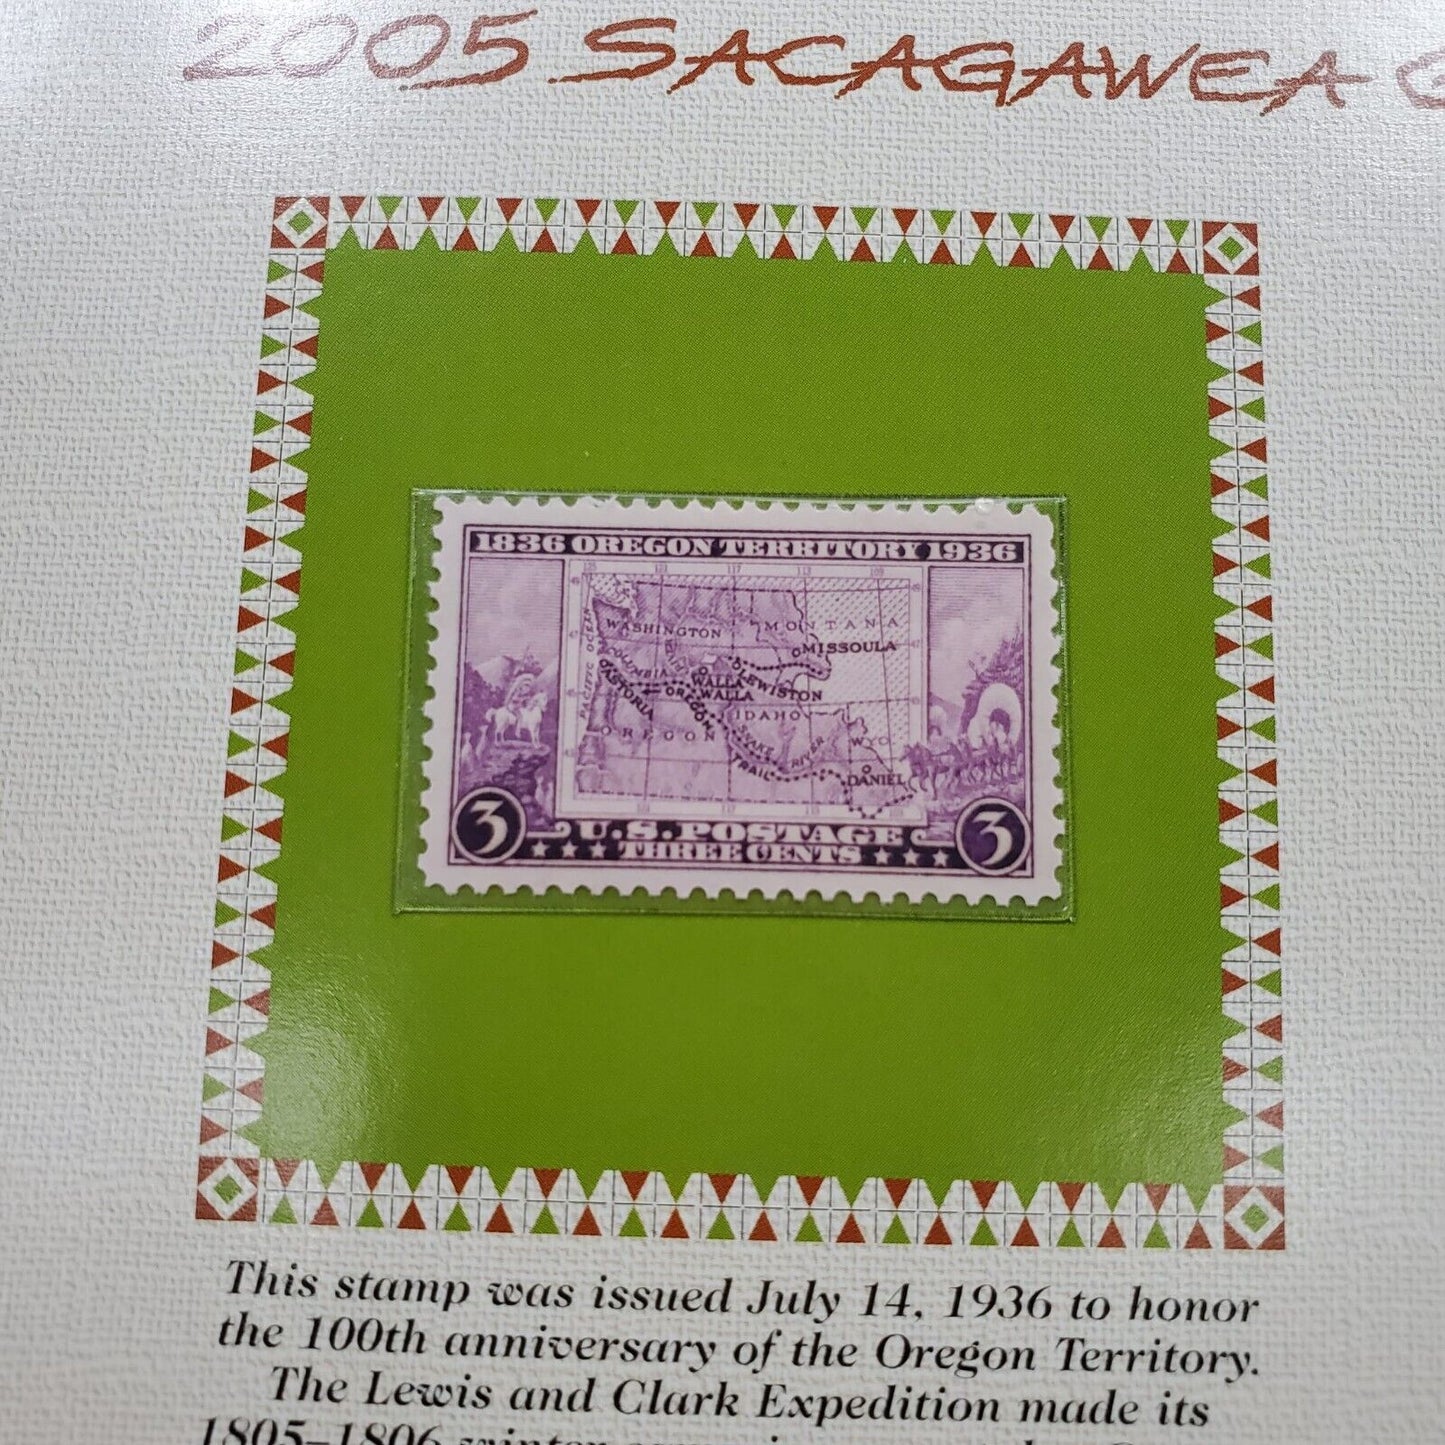 2005 P & D Sacagawea Golden Dollars & 1936 USA 3C Stamp Uncirculated Sheet